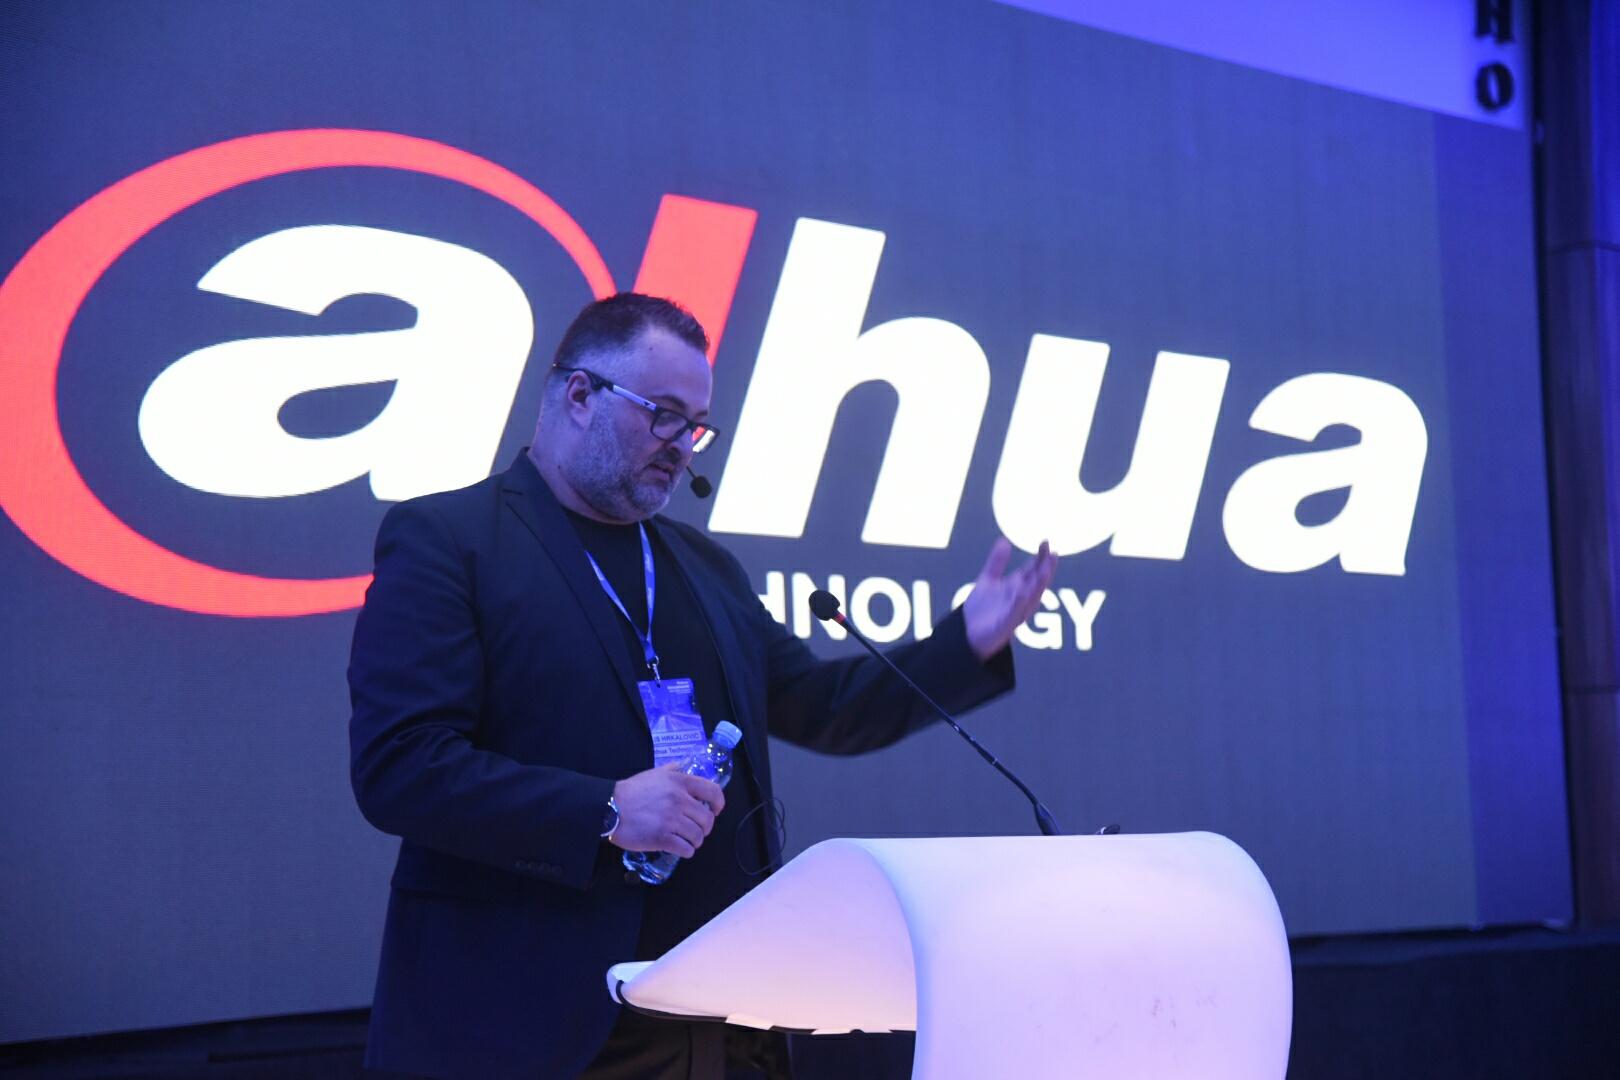 Održana prva stručna konferencija "Dahua Roadshow 2019" - Avaz